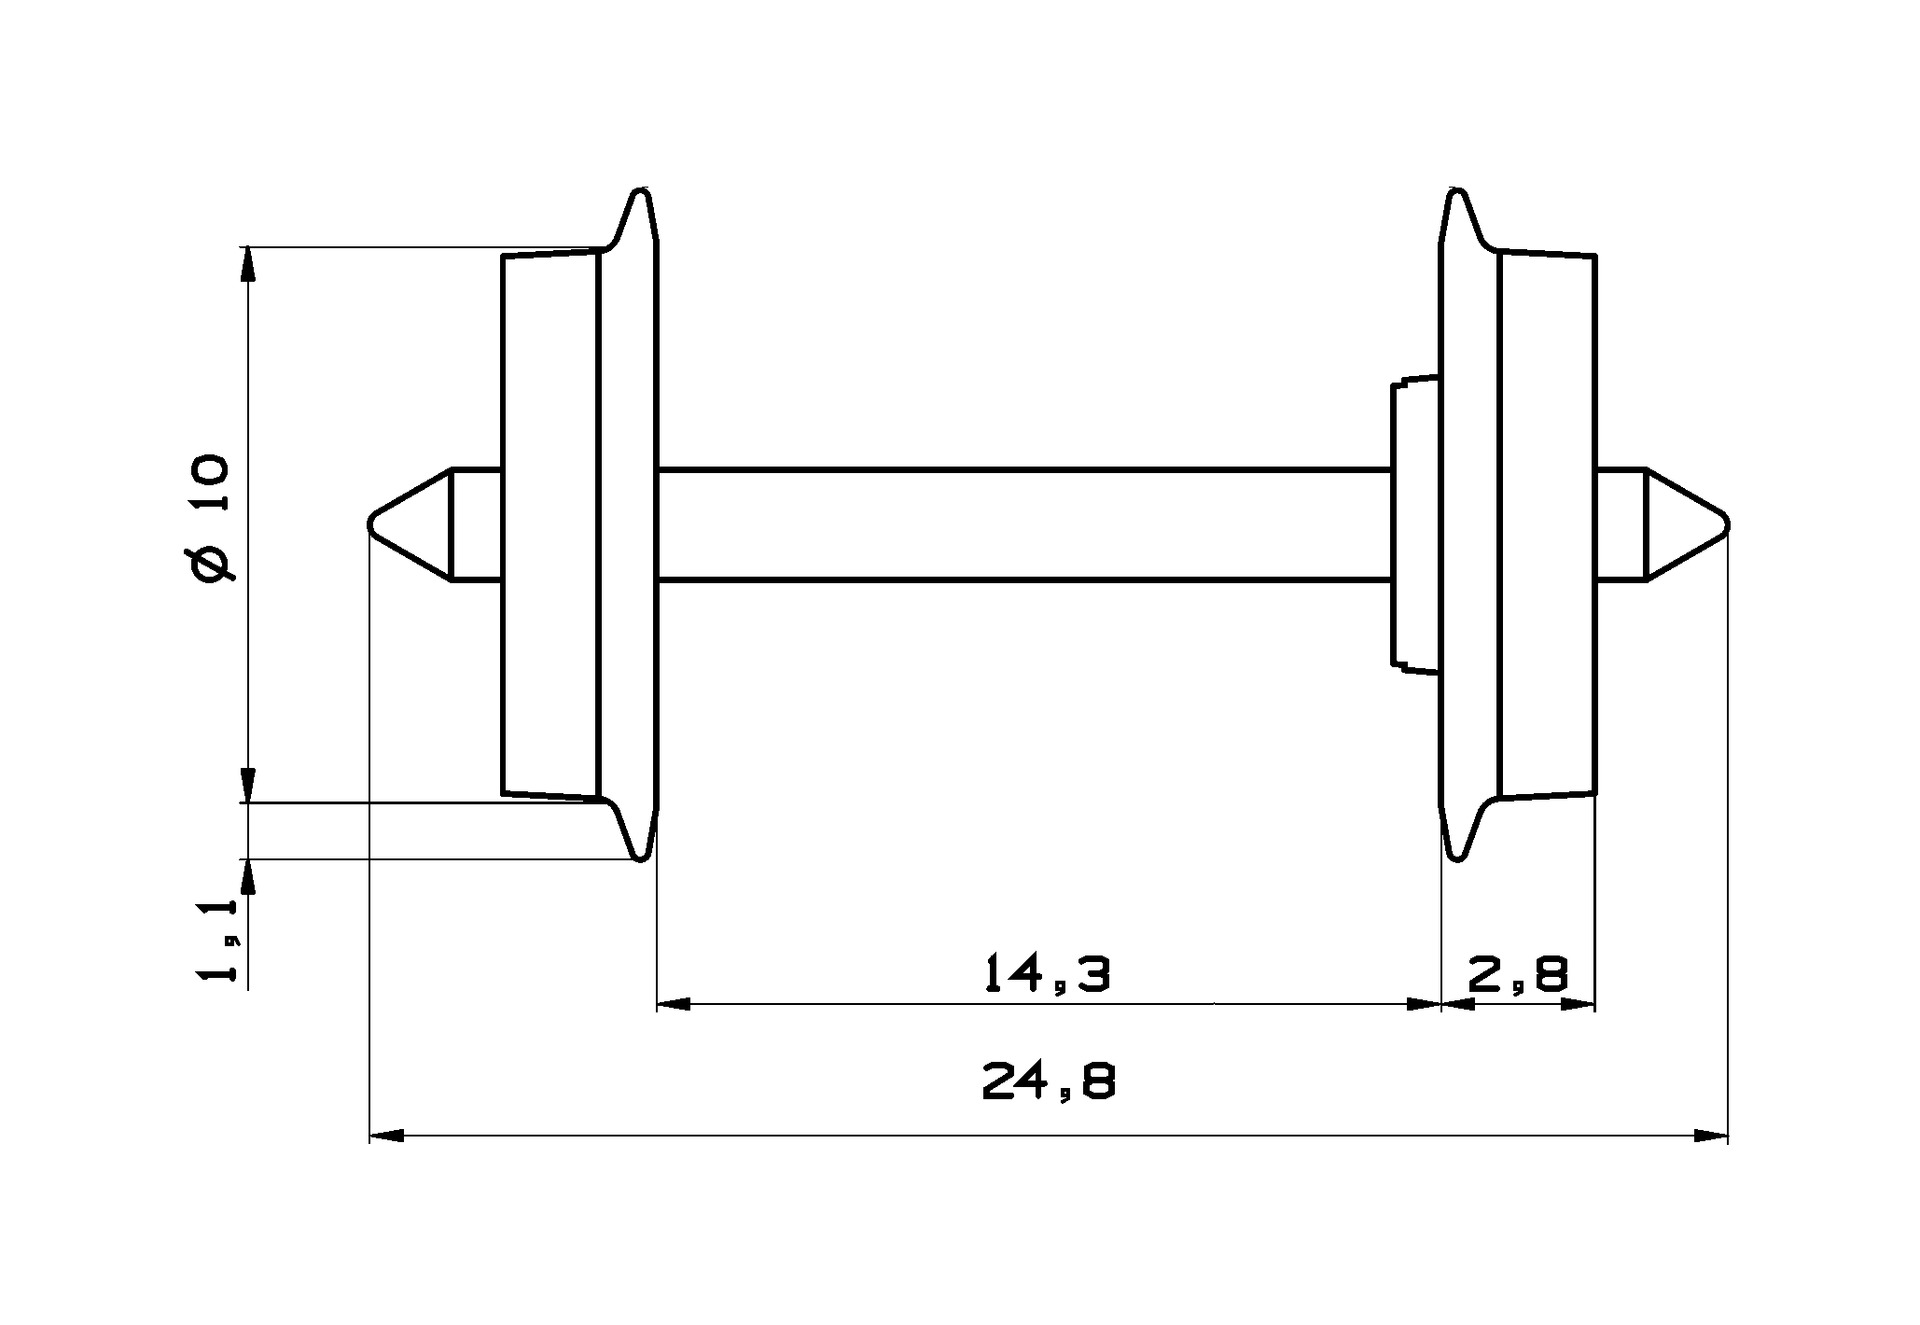 Dvojkolie Ø 10 mm jednostranne izolovan (24,8) [H0]